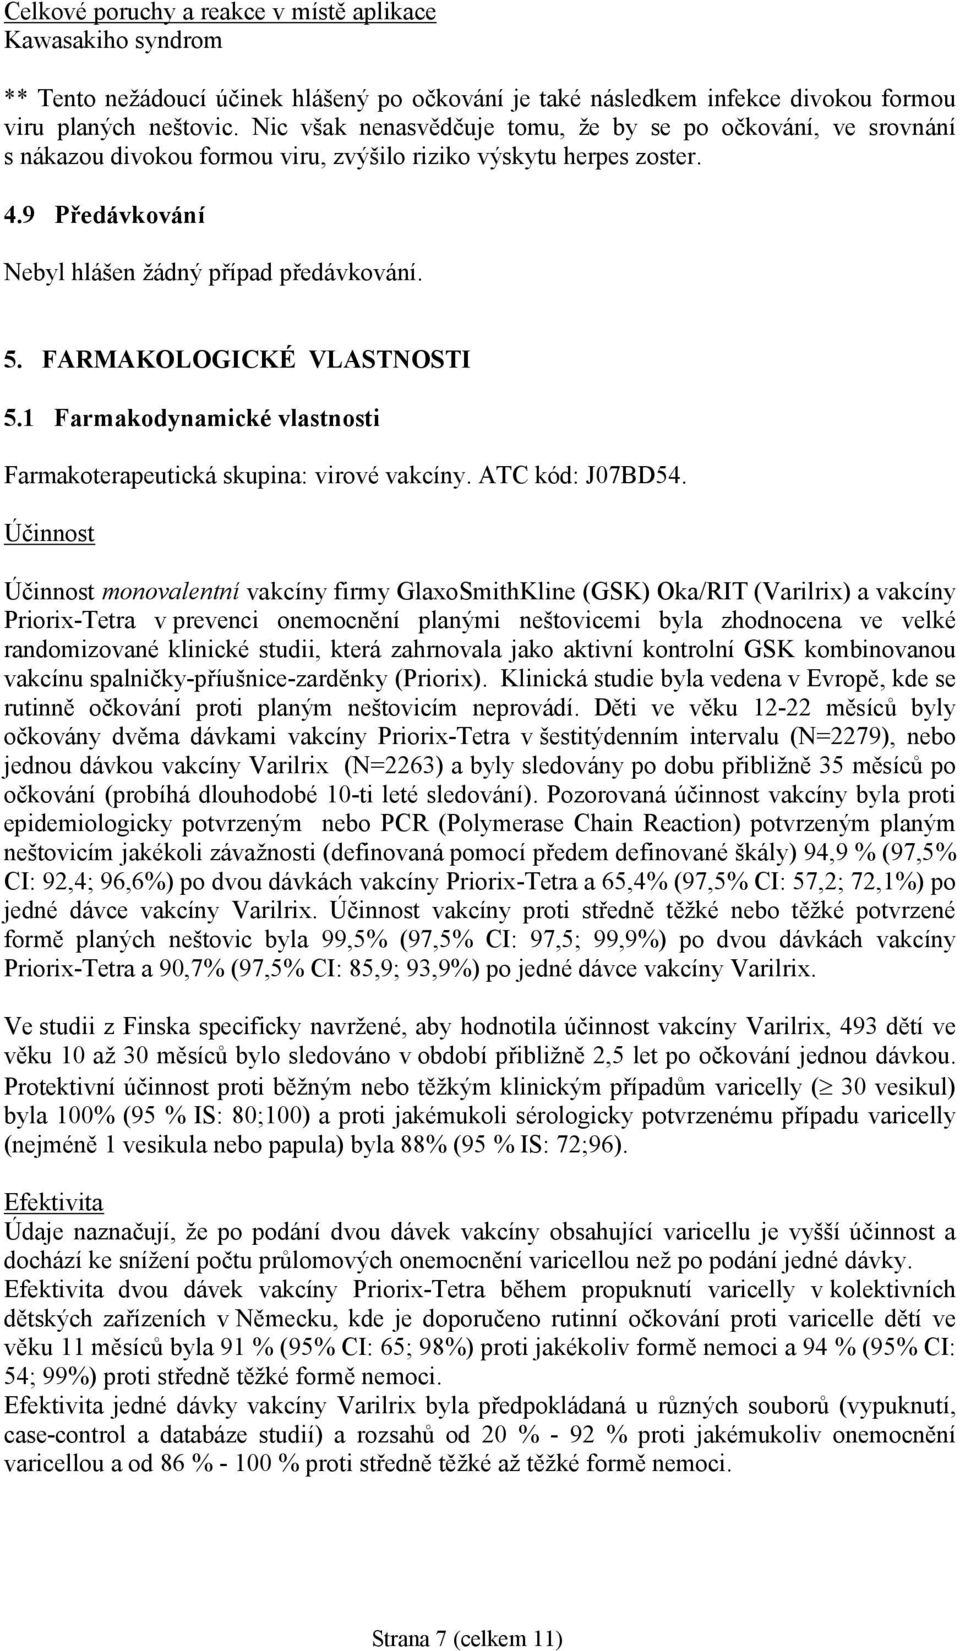 FARMAKOLOGICKÉ VLASTNOSTI 5.1 Farmakodynamické vlastnosti Farmakoterapeutická skupina: virové vakcíny. ATC kód: J07BD54.